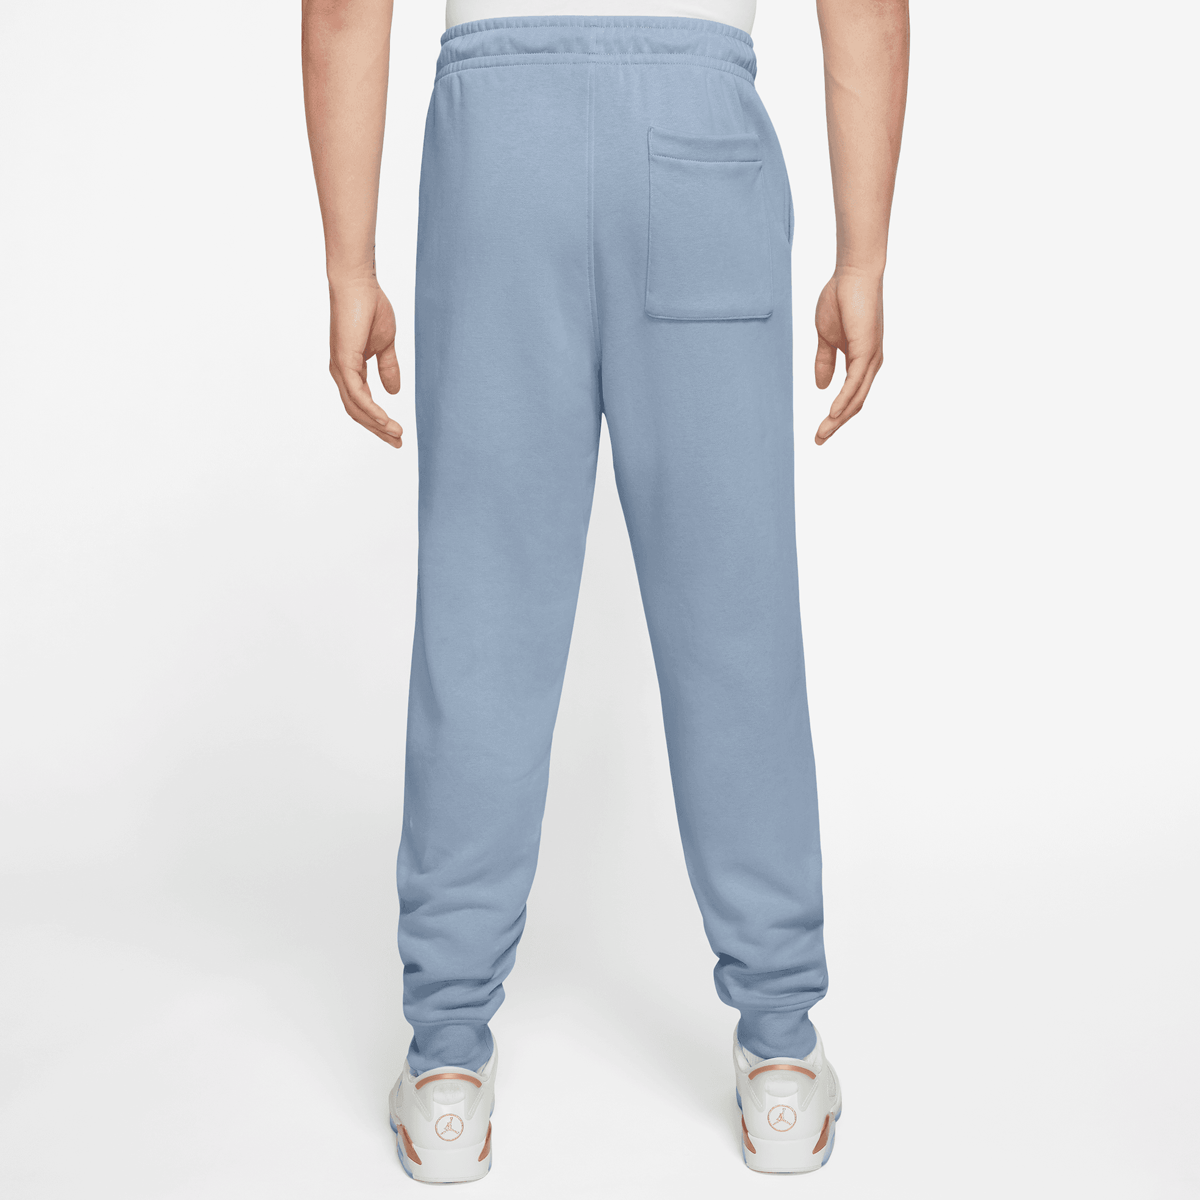 Jordan Essentials Fleece Pants Trainingsbroeken Heren blue grey white maat: S beschikbare maaten:S M L XL